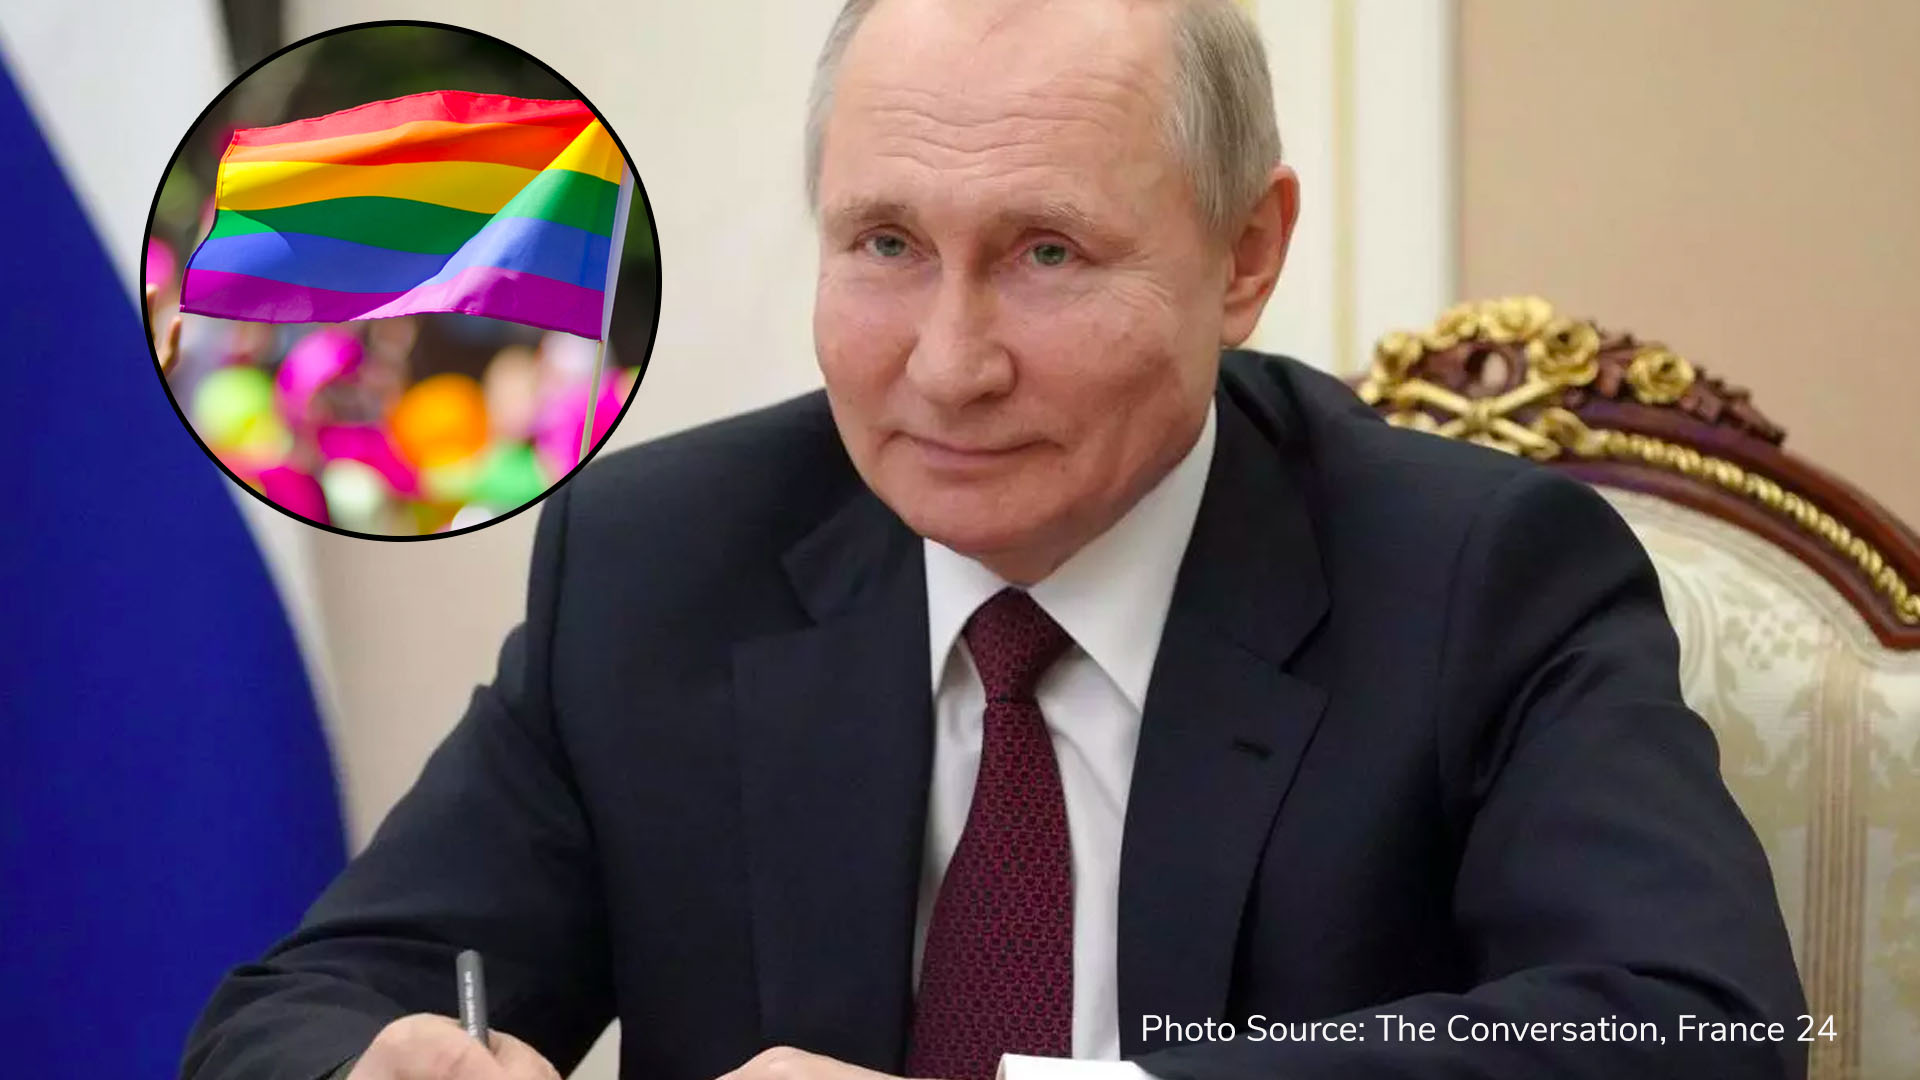 Putin Bans Same Sex Marriage And Transgender Adoption